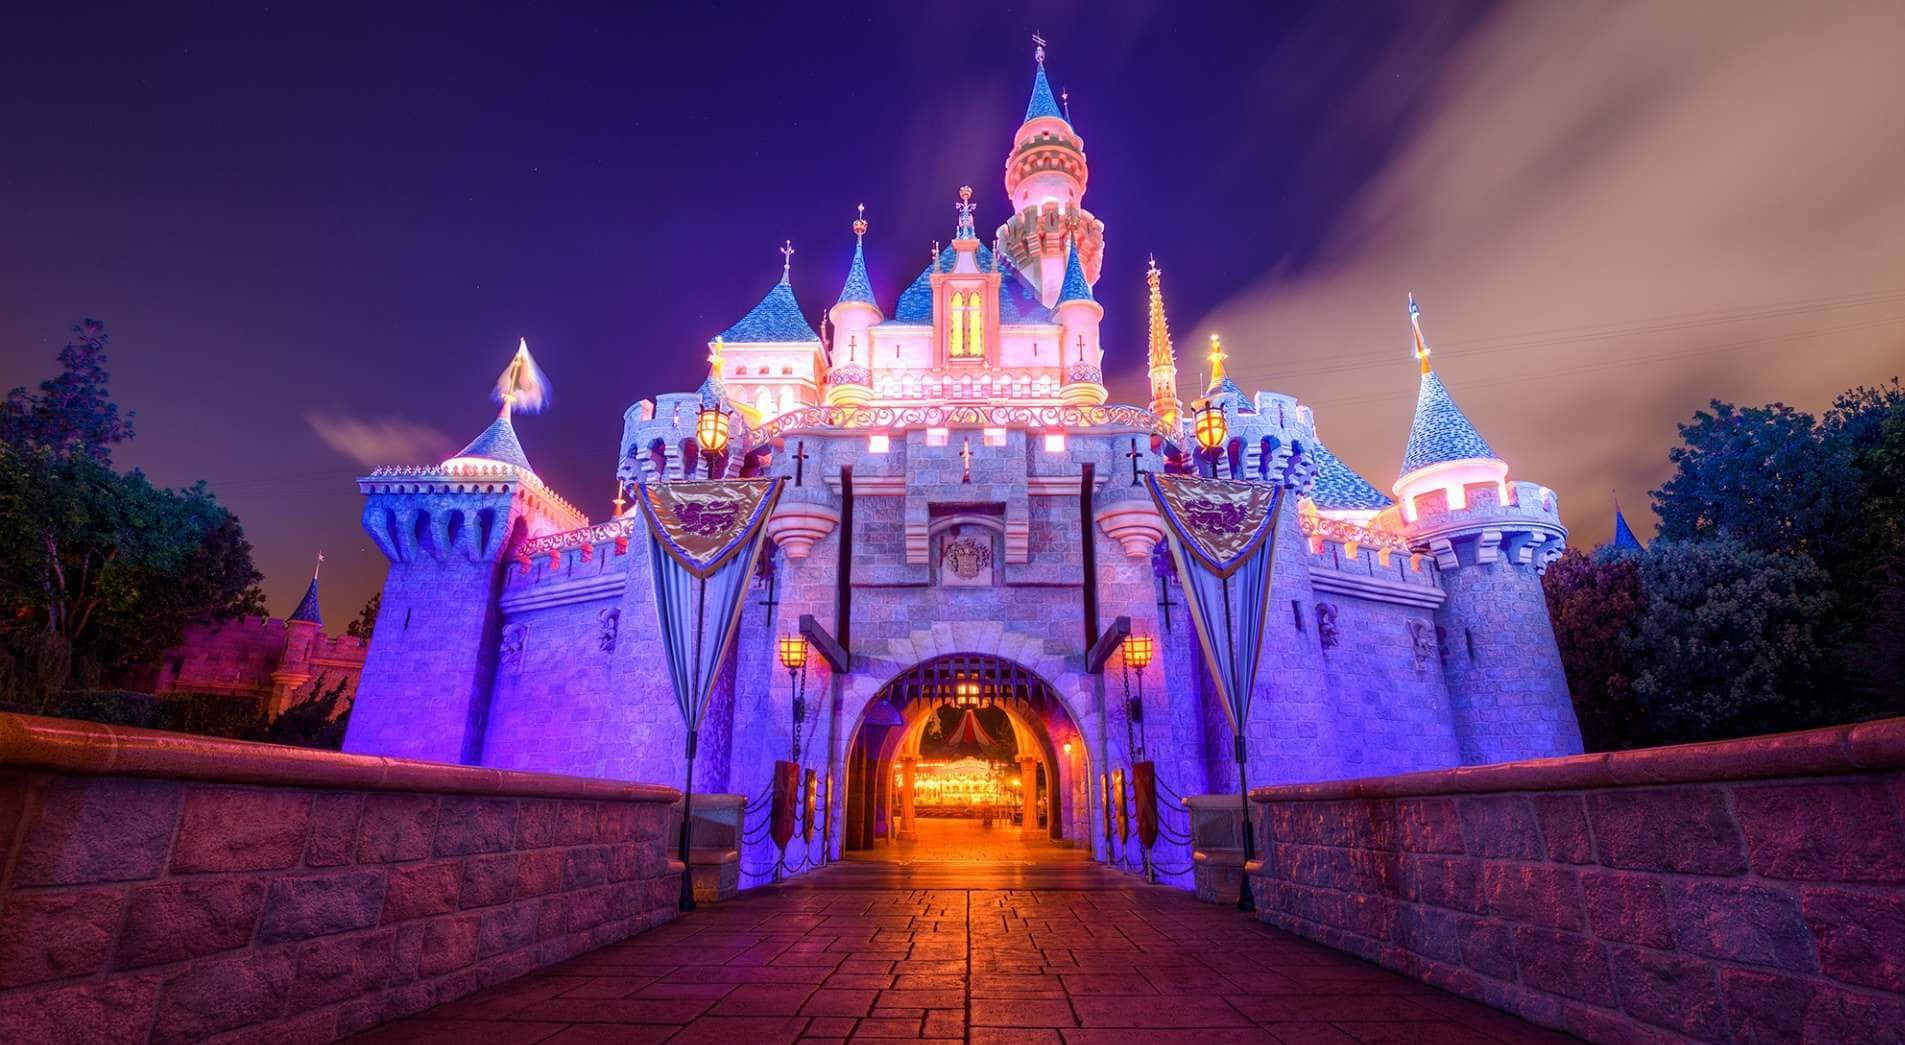 Viajepara Um Mundo De Sonhos E Imaginação No Castelo Da Disney.